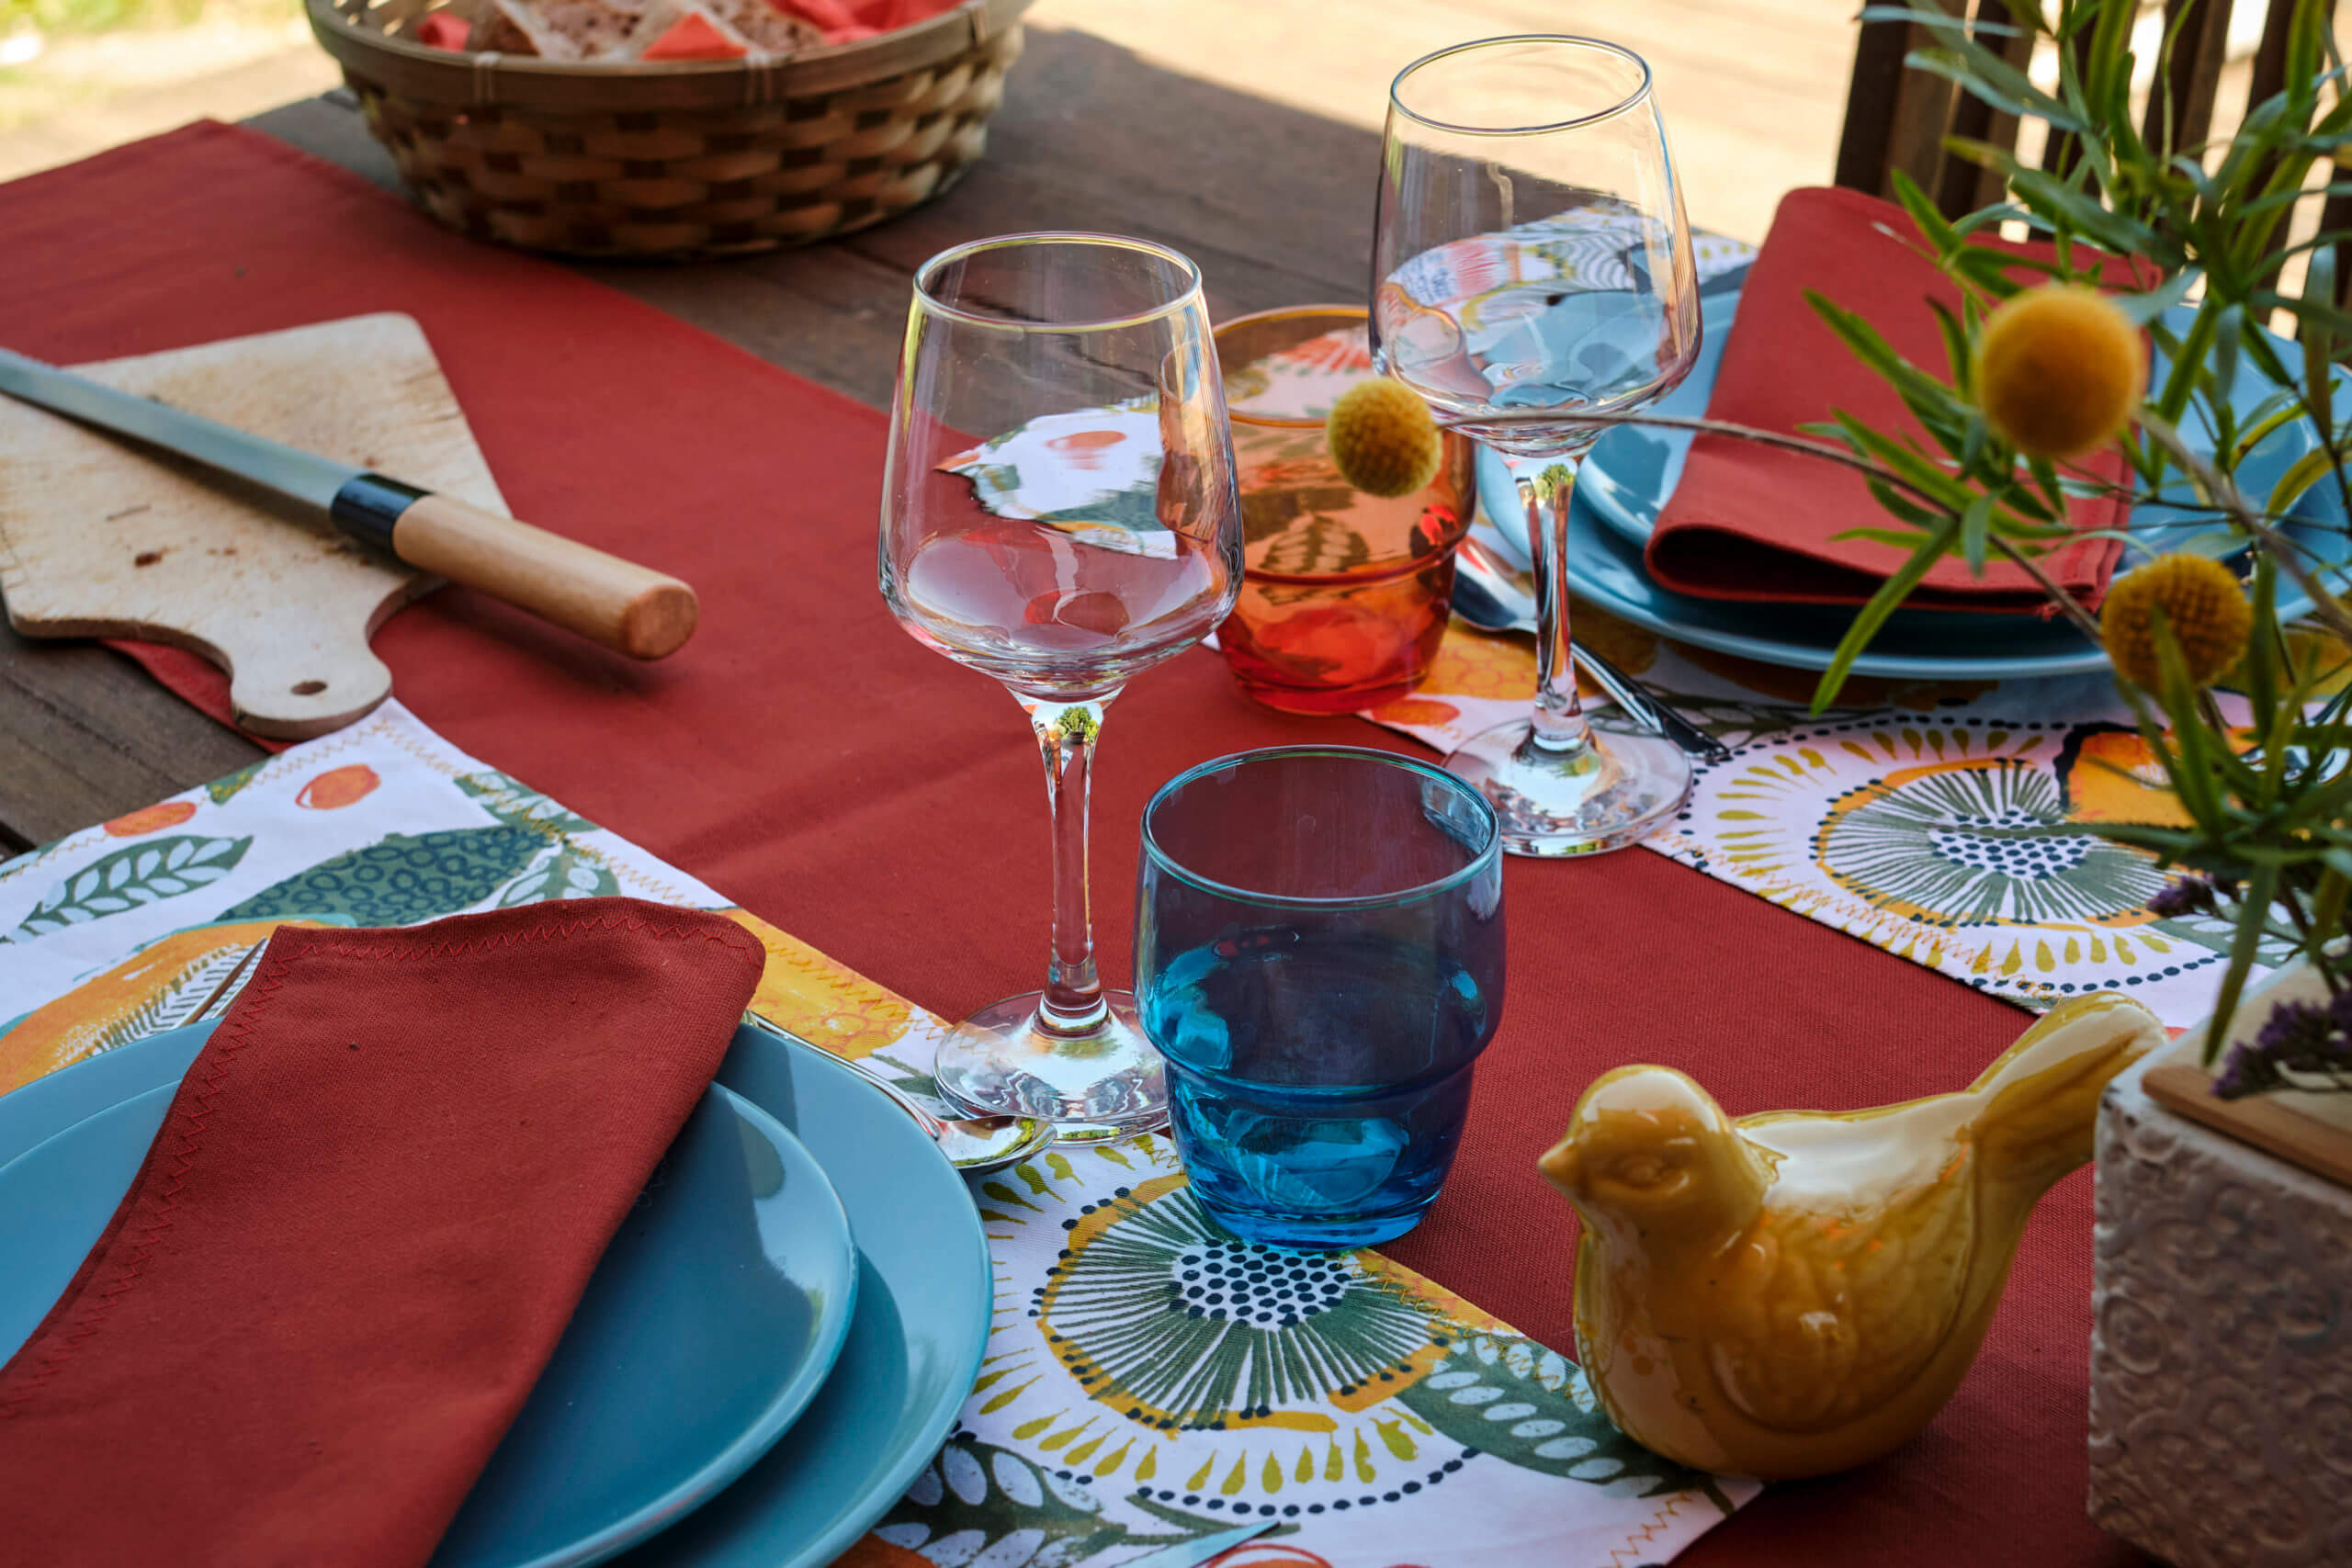 Décoration de table par Georgette MagritteS pour #wawwlatable : chemin de table rouge, assiettes bleues, verres à vin, dessous de plats colorés, planche à pain, chardons, etc.